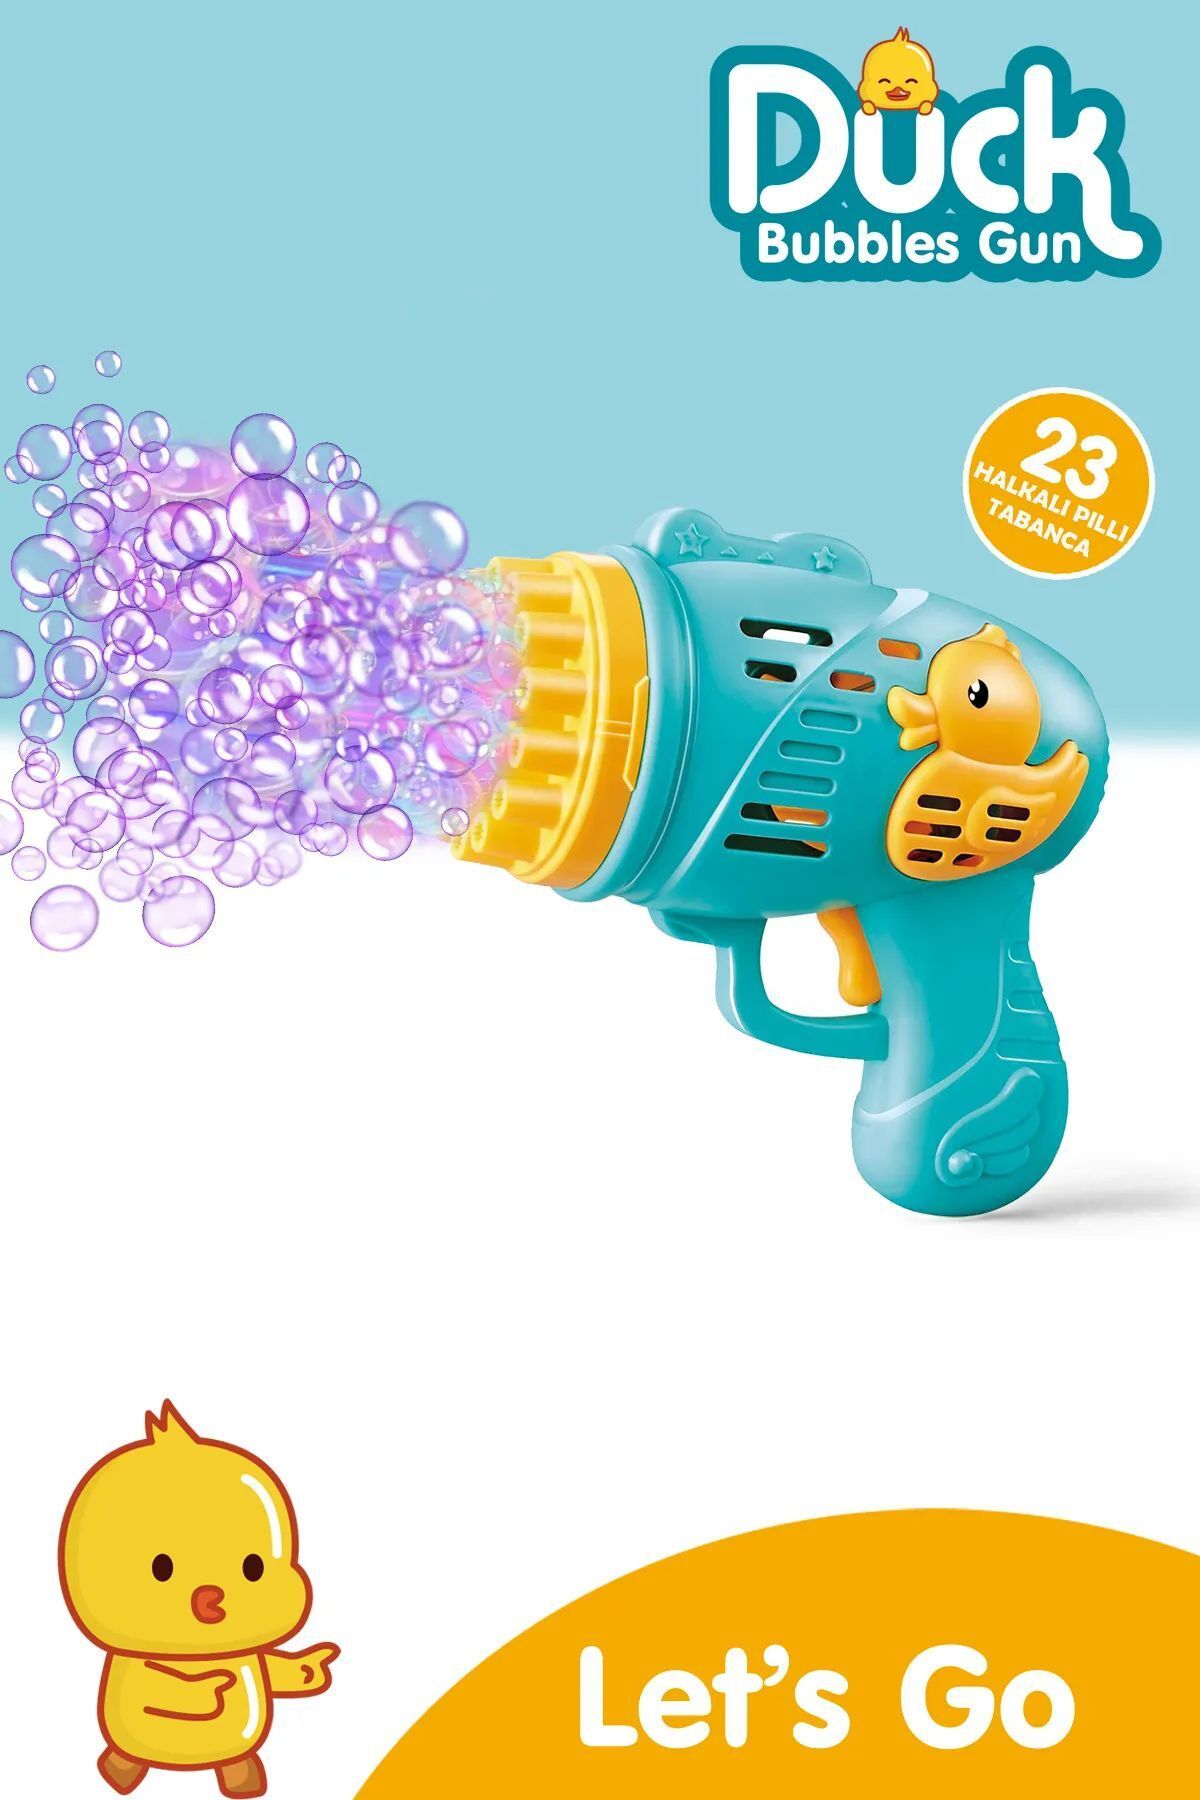 LONDONstore Duck Çok Delikli Pilli Köpük Atan Tabanca Oyuncağı 23 Delikli Bubble Gun